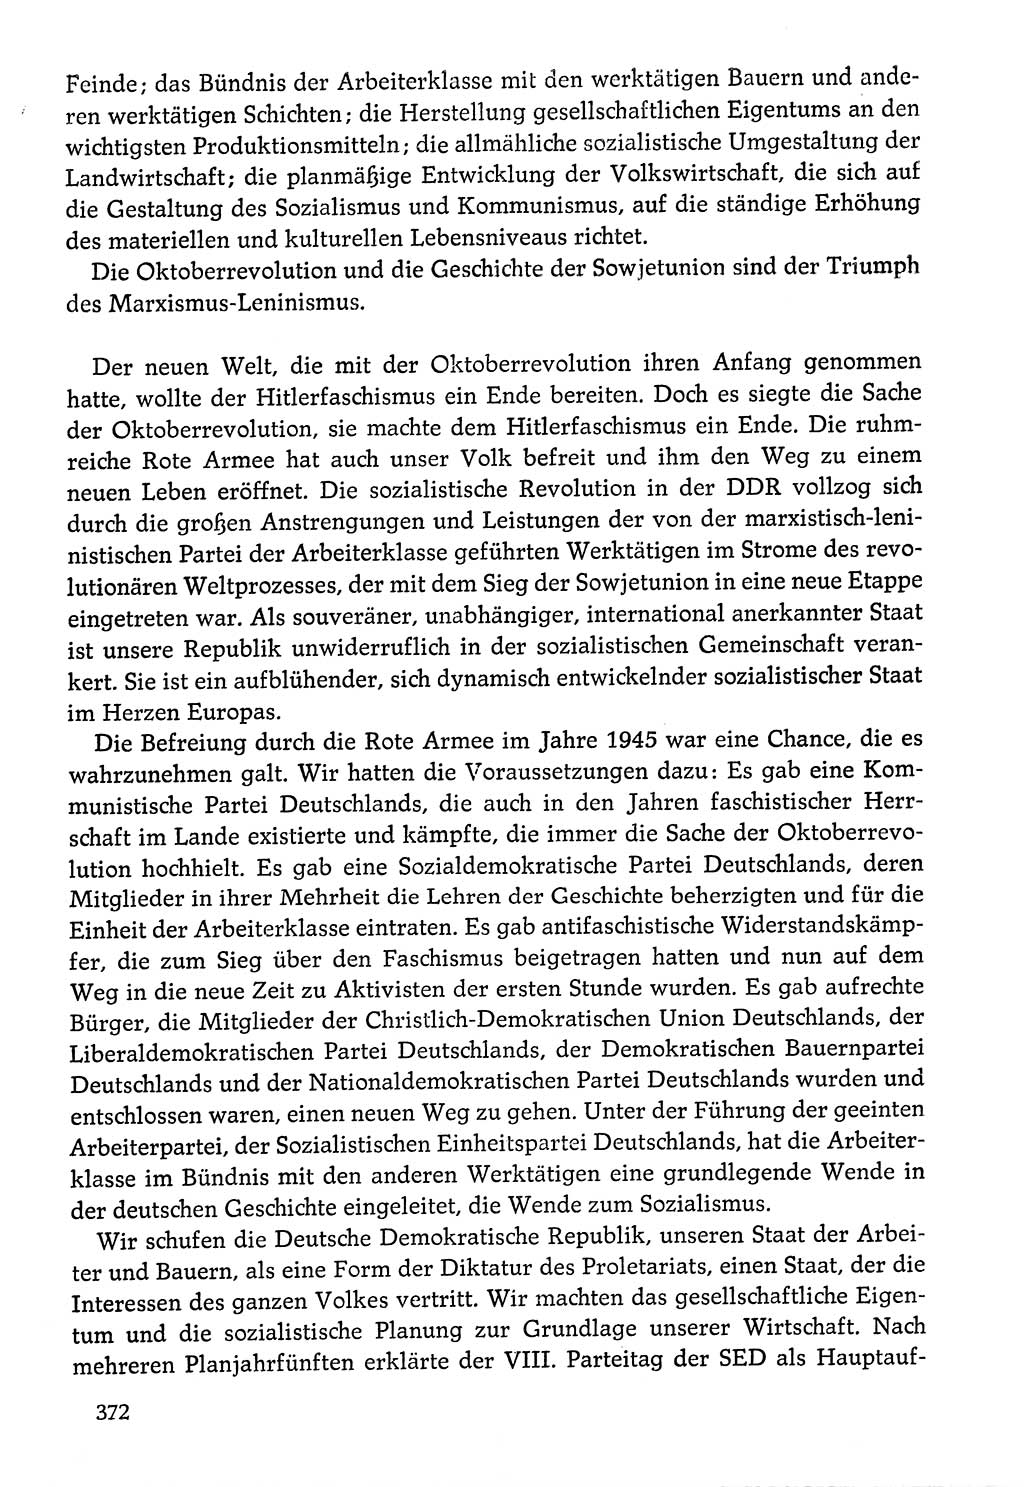 Dokumente der Sozialistischen Einheitspartei Deutschlands (SED) [Deutsche Demokratische Republik (DDR)] 1976-1977, Seite 372 (Dok. SED DDR 1976-1977, S. 372)